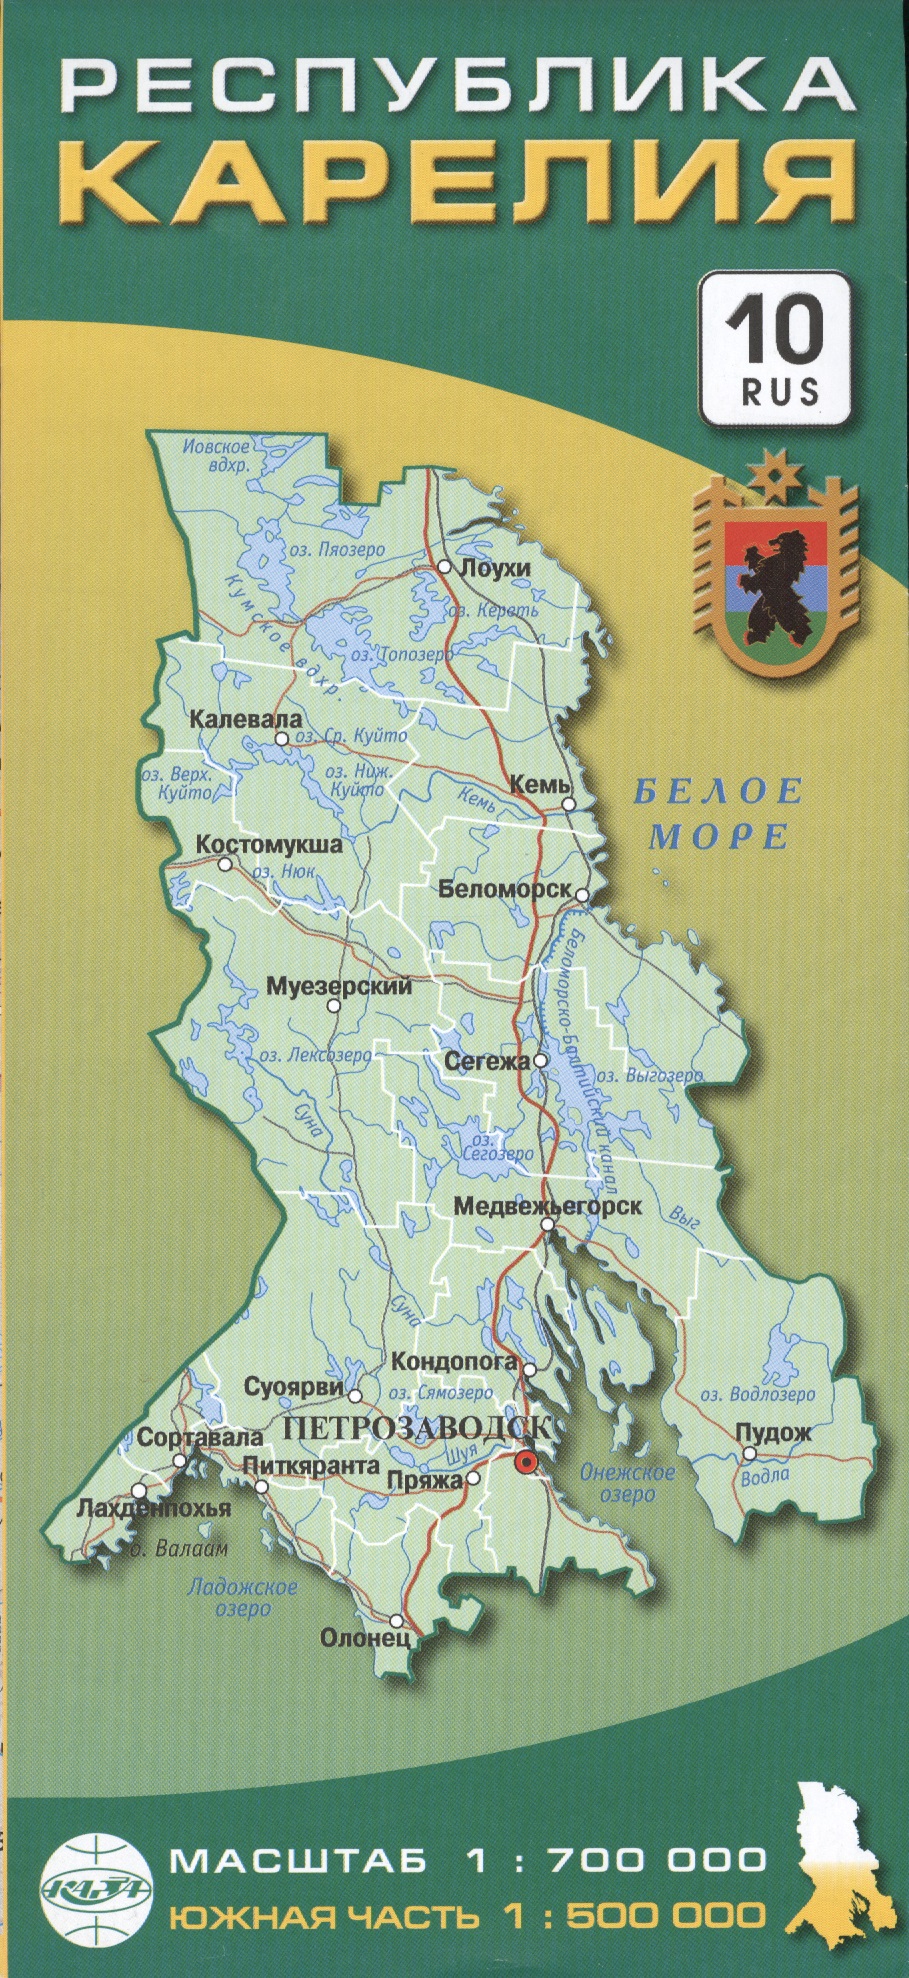 Карта Республика Карелия 1:700тыс.,южная часть 1:500тыс. карта республика карелия 10 rus южная часть